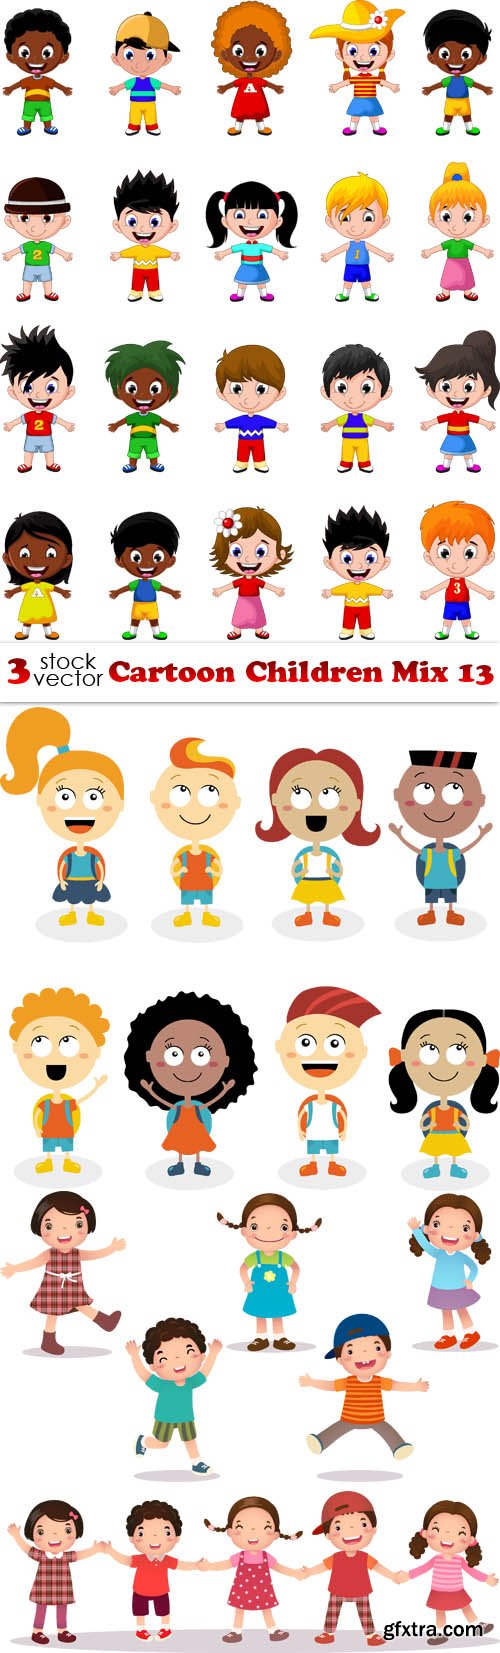 Vectors - Cartoon Children Mix 13